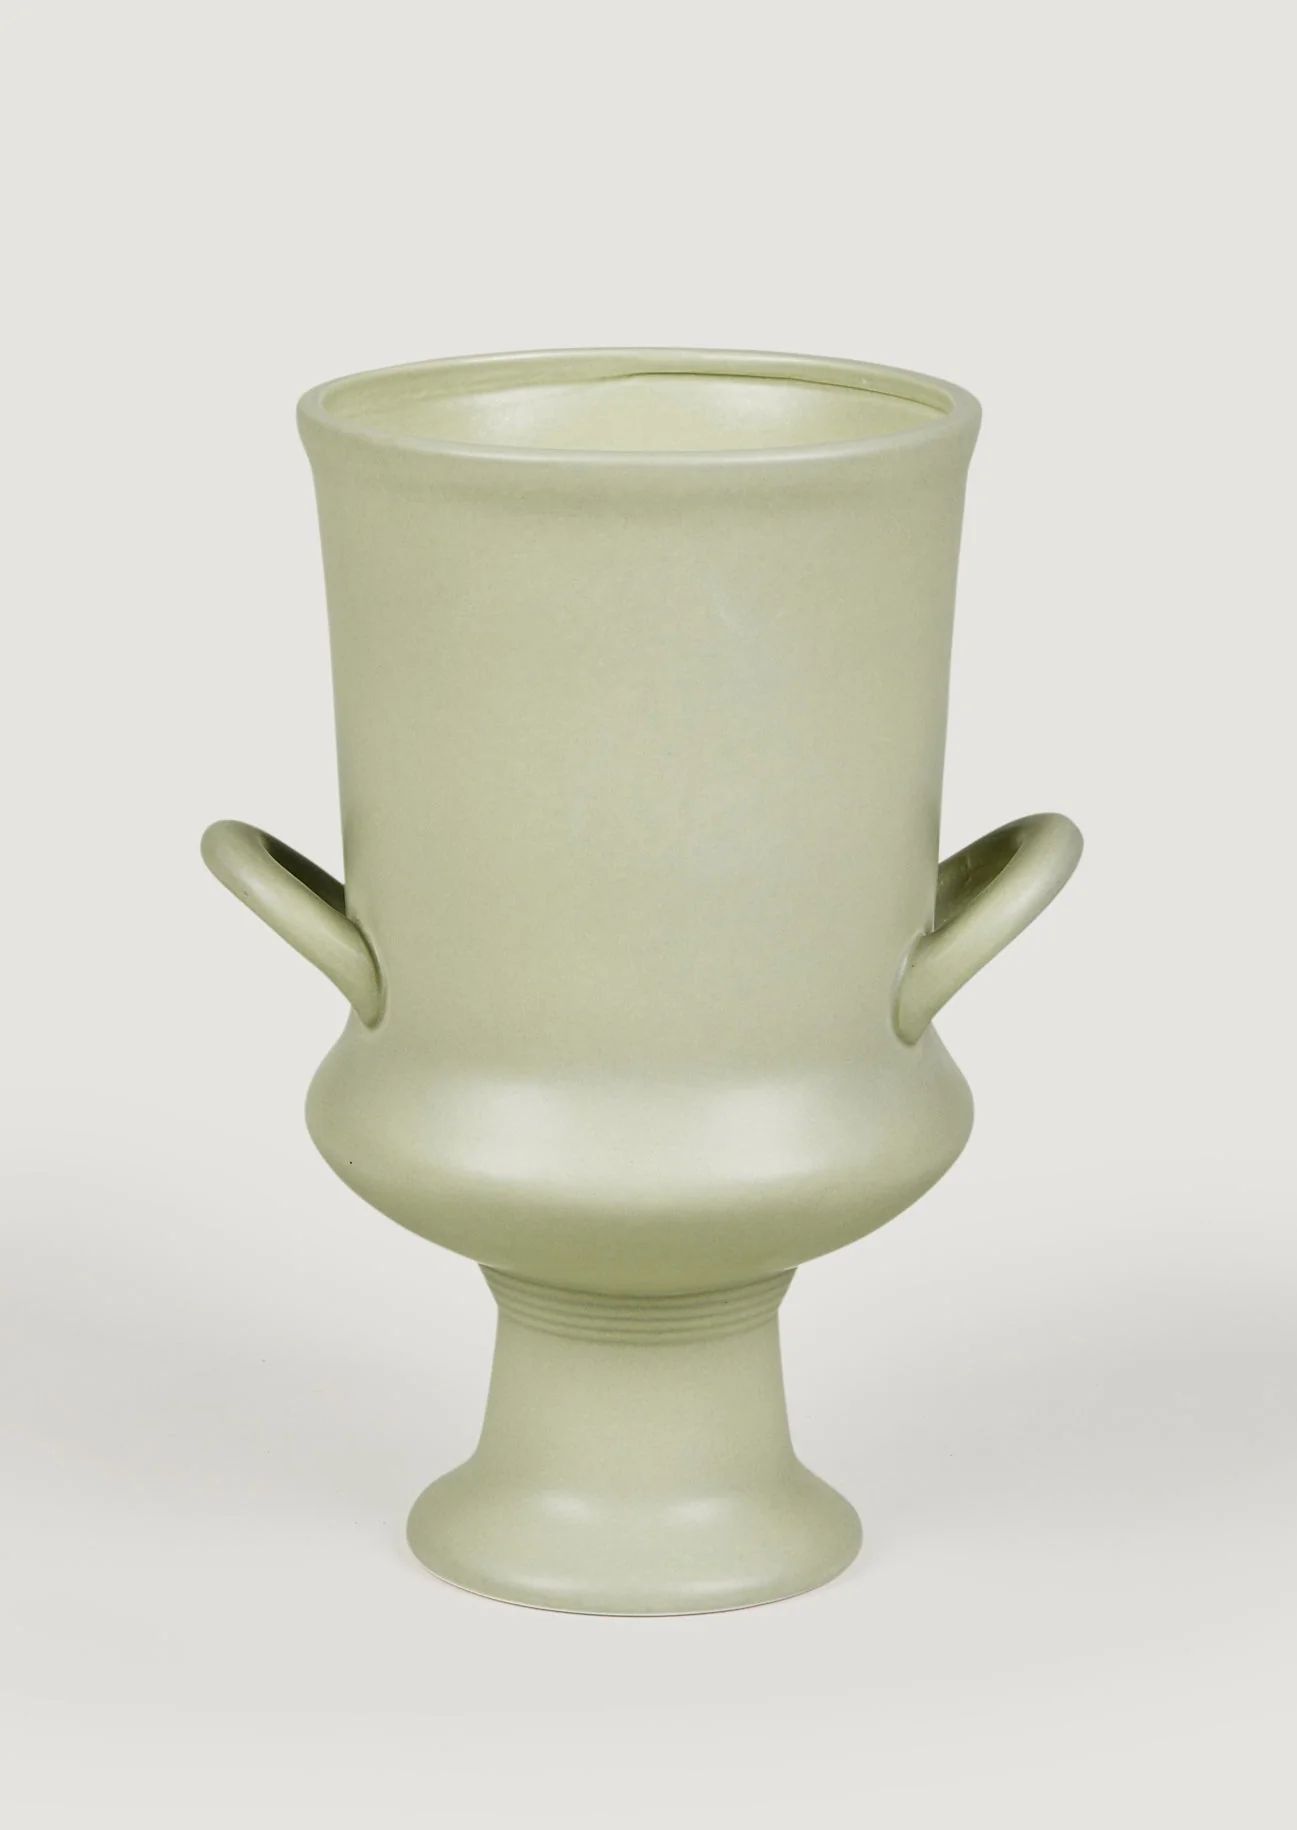 Satin Ceramic Urn in Sage | Vases for Interior Design at Afloral.com | Afloral